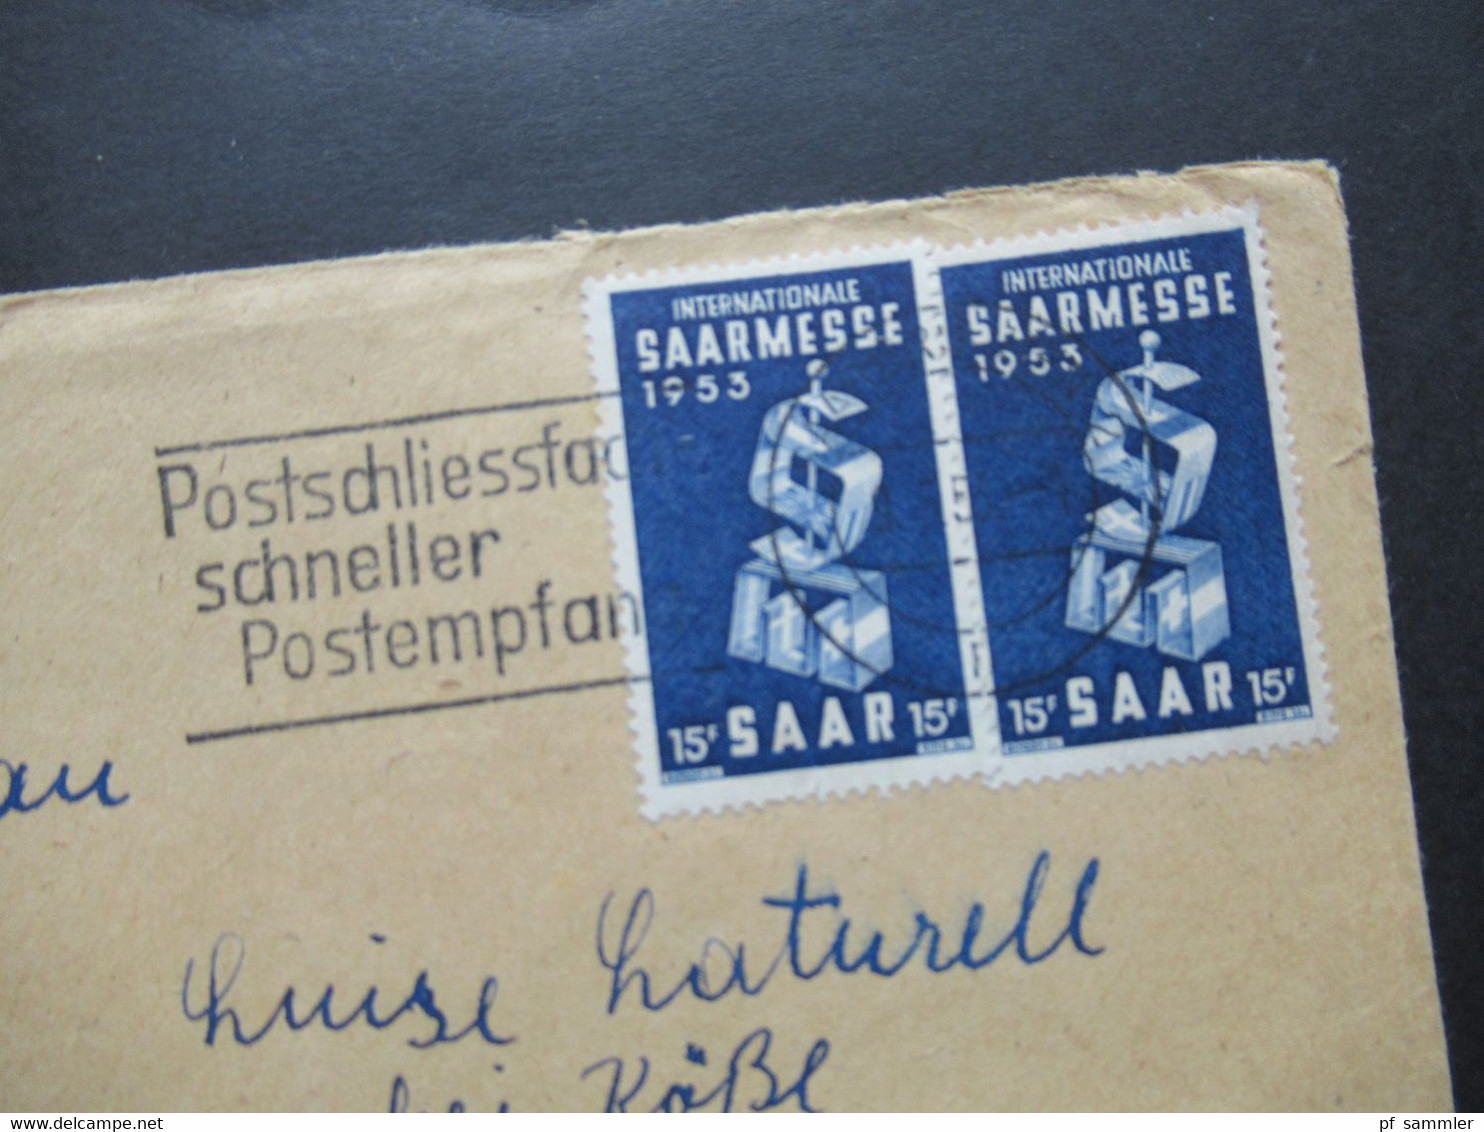 Saarland 1953 Nr.341 (2) MeF Internationale Saarmesse Werbestempel Postschliessfach Schneller Postempfang - Briefe U. Dokumente